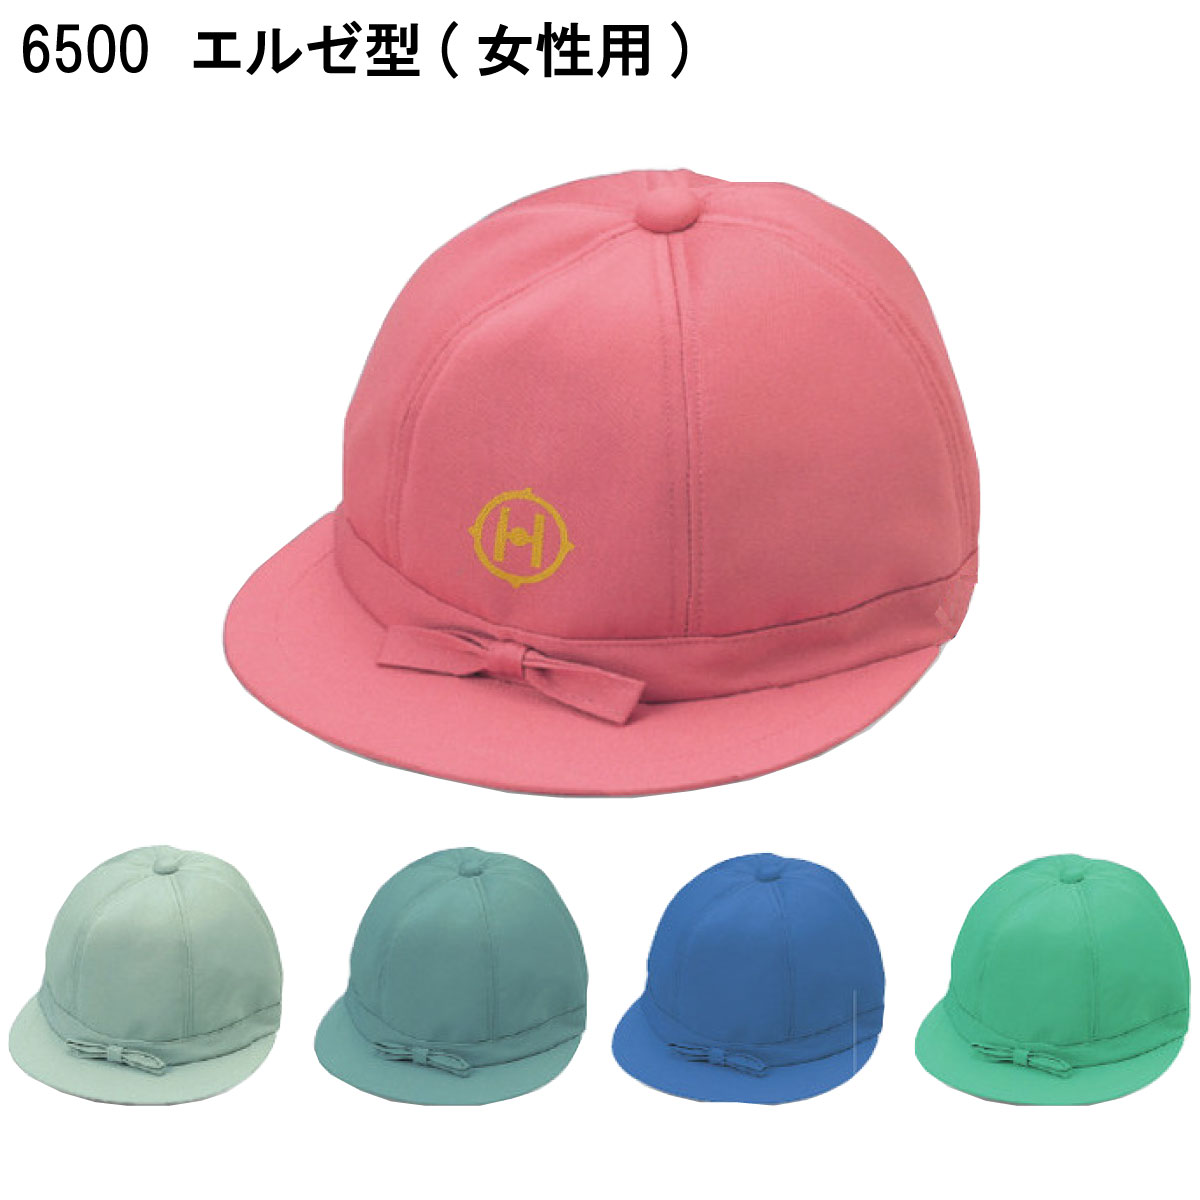 エルゼ型(女性用) 6500 フリー 倉敷製帽 5色展開